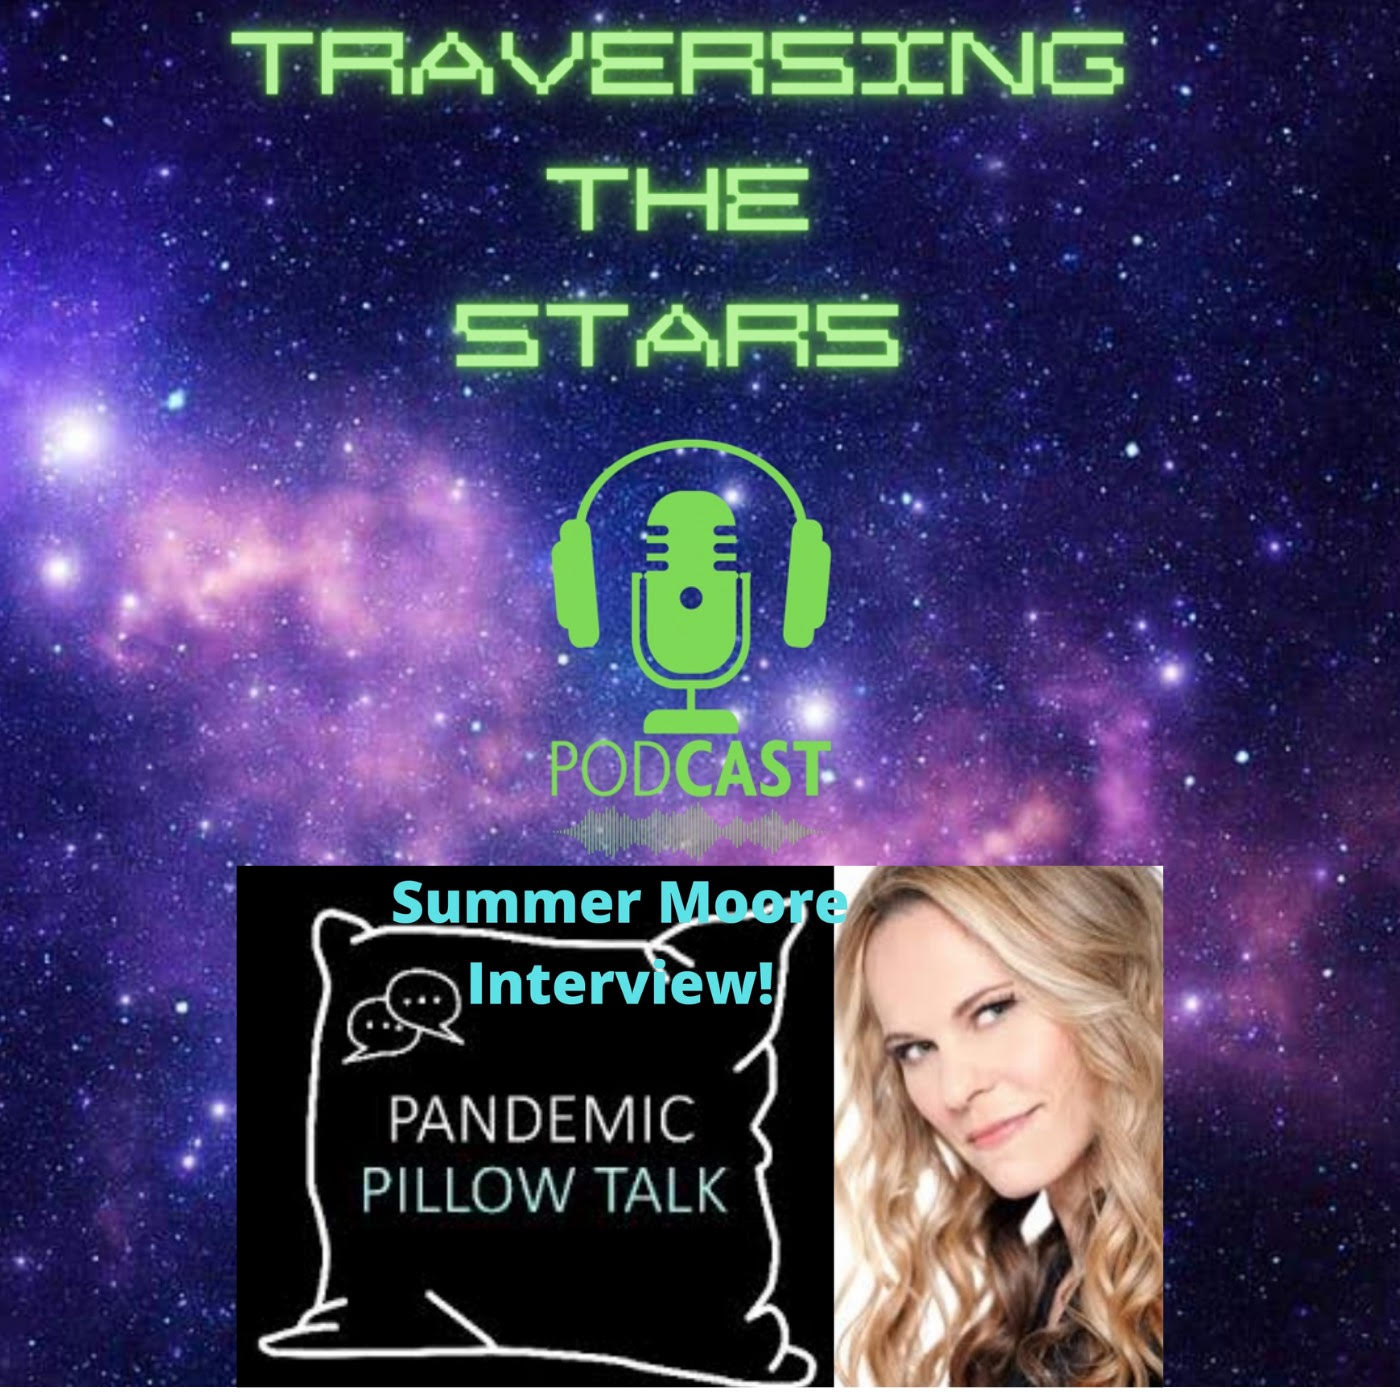 Artwork for podcast Traversing The Stars